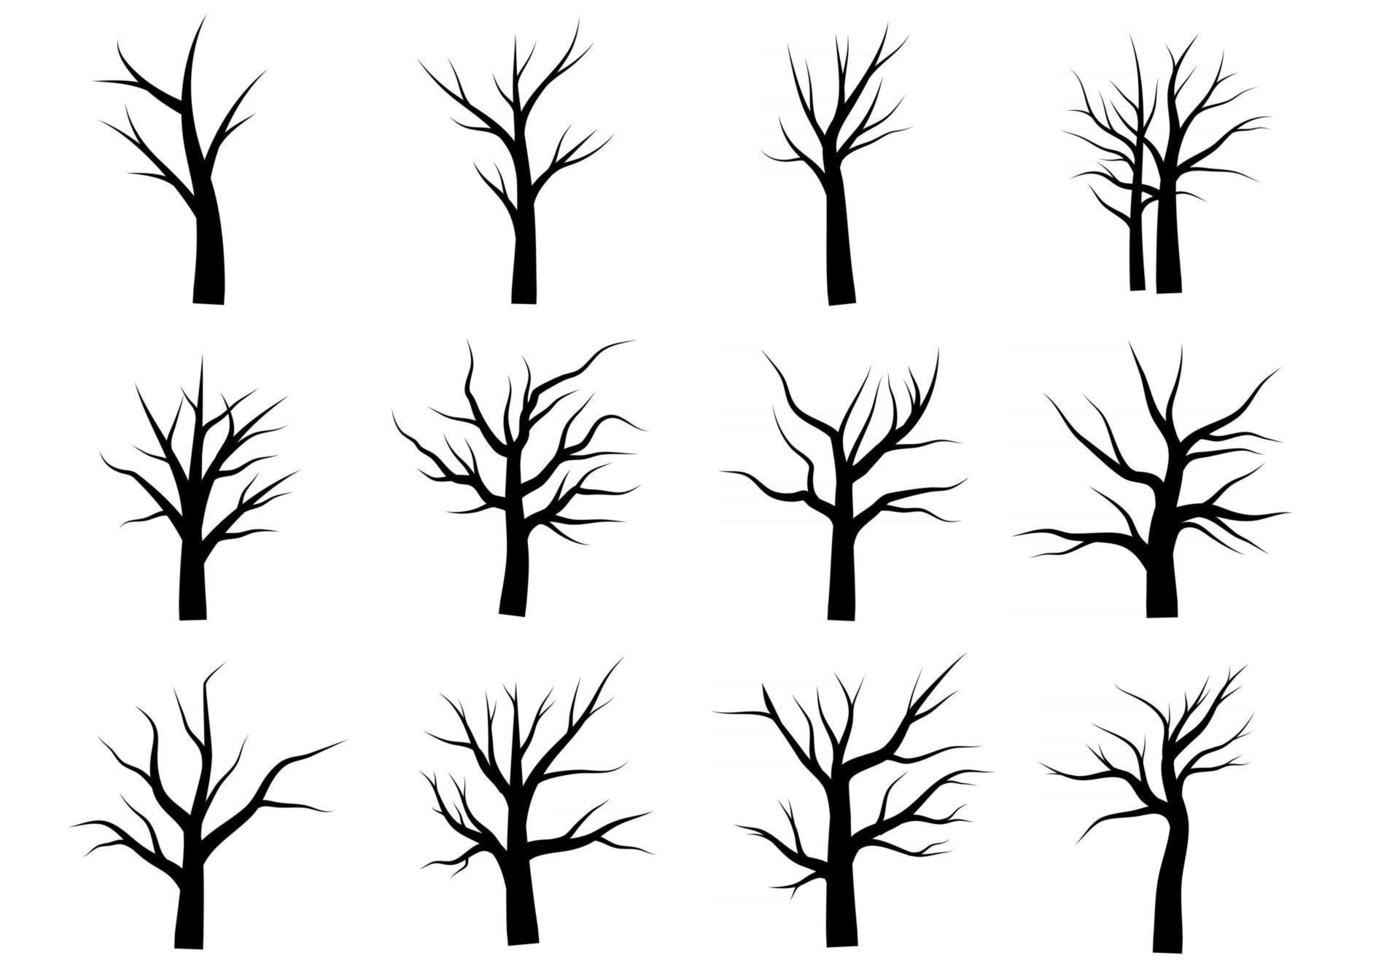 arbre mort sans feuilles doodle vecteur